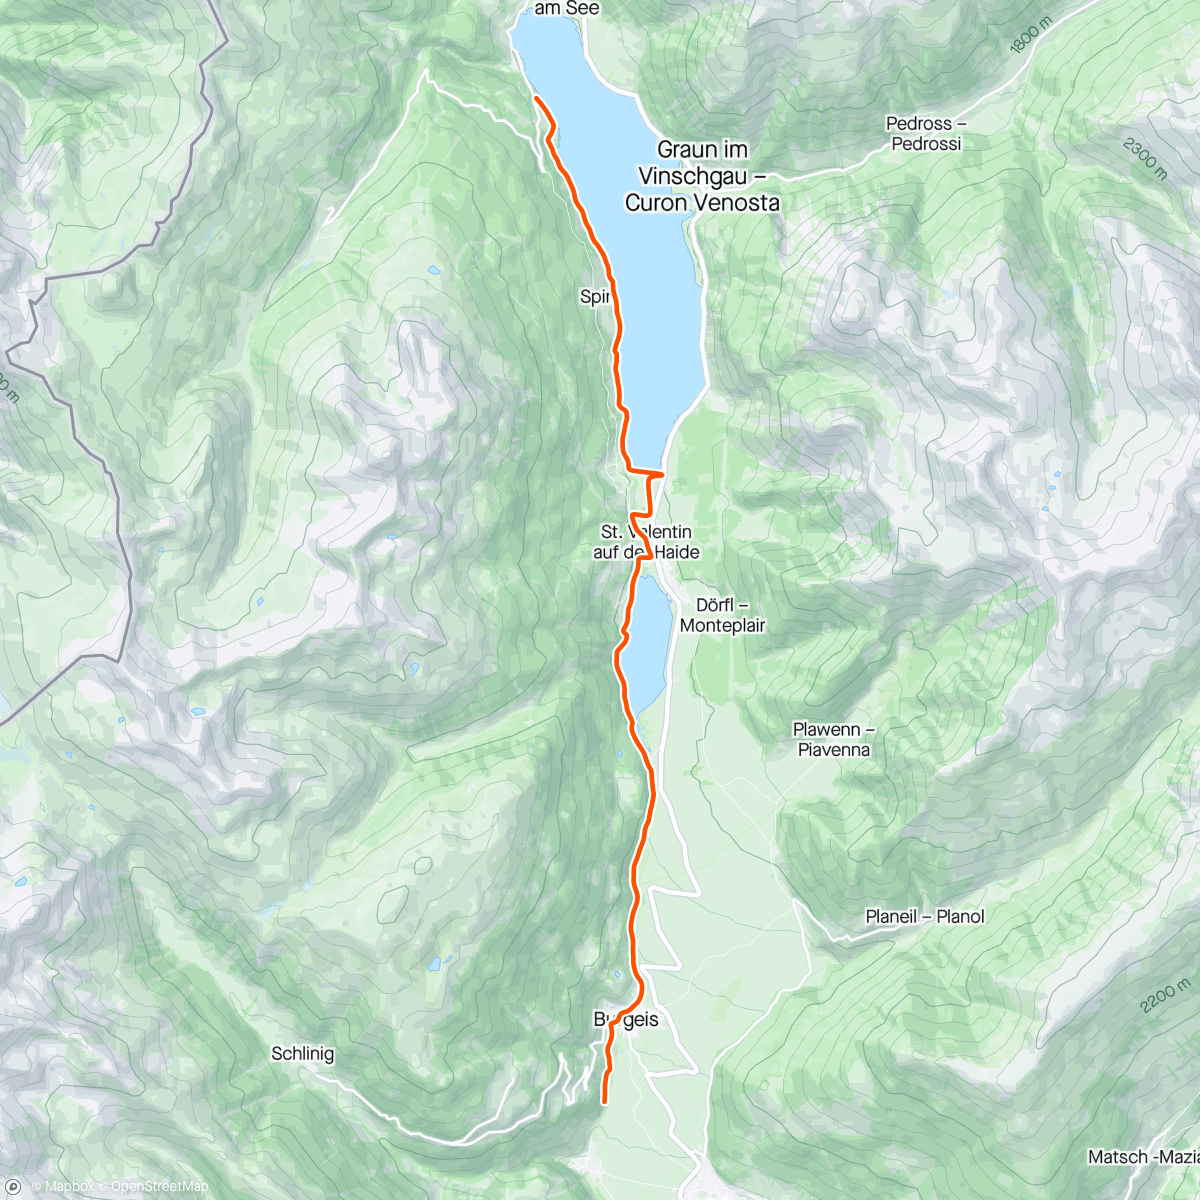 アクティビティ「Kinomap - 30 minute Ultimate Indoor Cycling Workout Alps South Tyrol Lake Tour 2020 Garmin Ultra HD Video」の地図